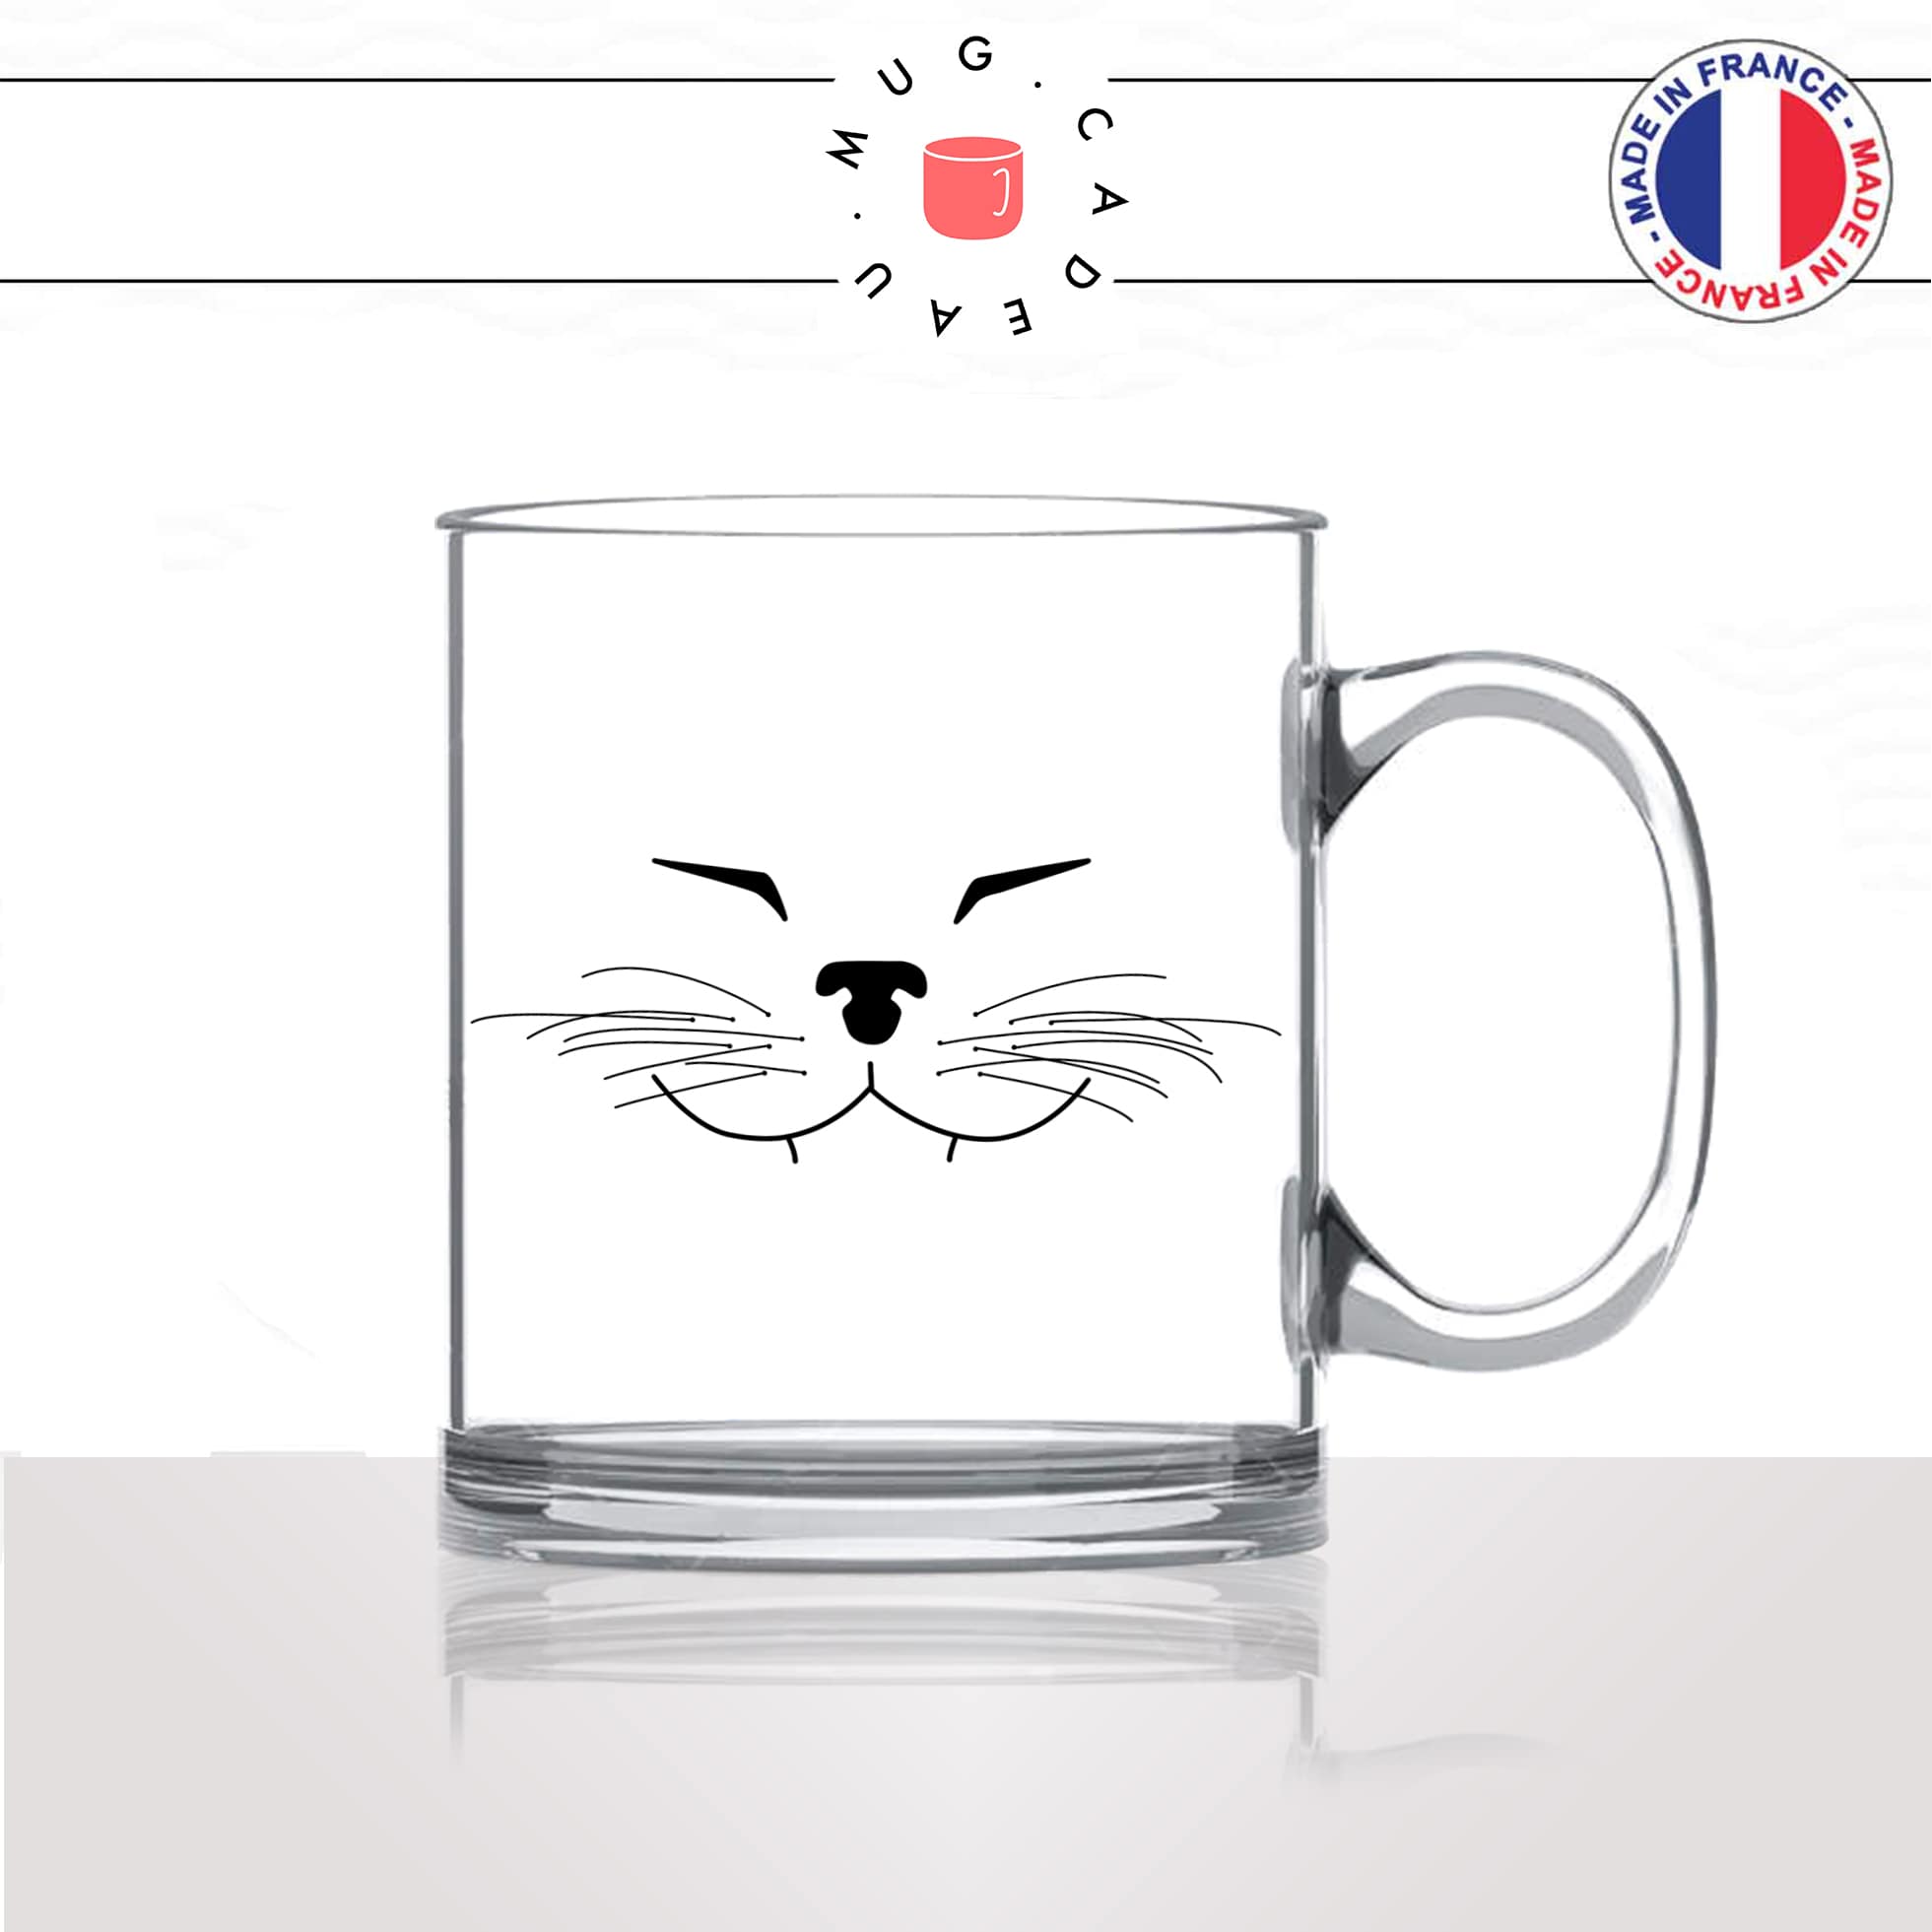 mug-tasse-en-verre-transparent-tete-de-chat-content-moustaches-mignon-animal-chaton-noir-fun-café-thé-idée-cadeau-original-personnalisé2-min